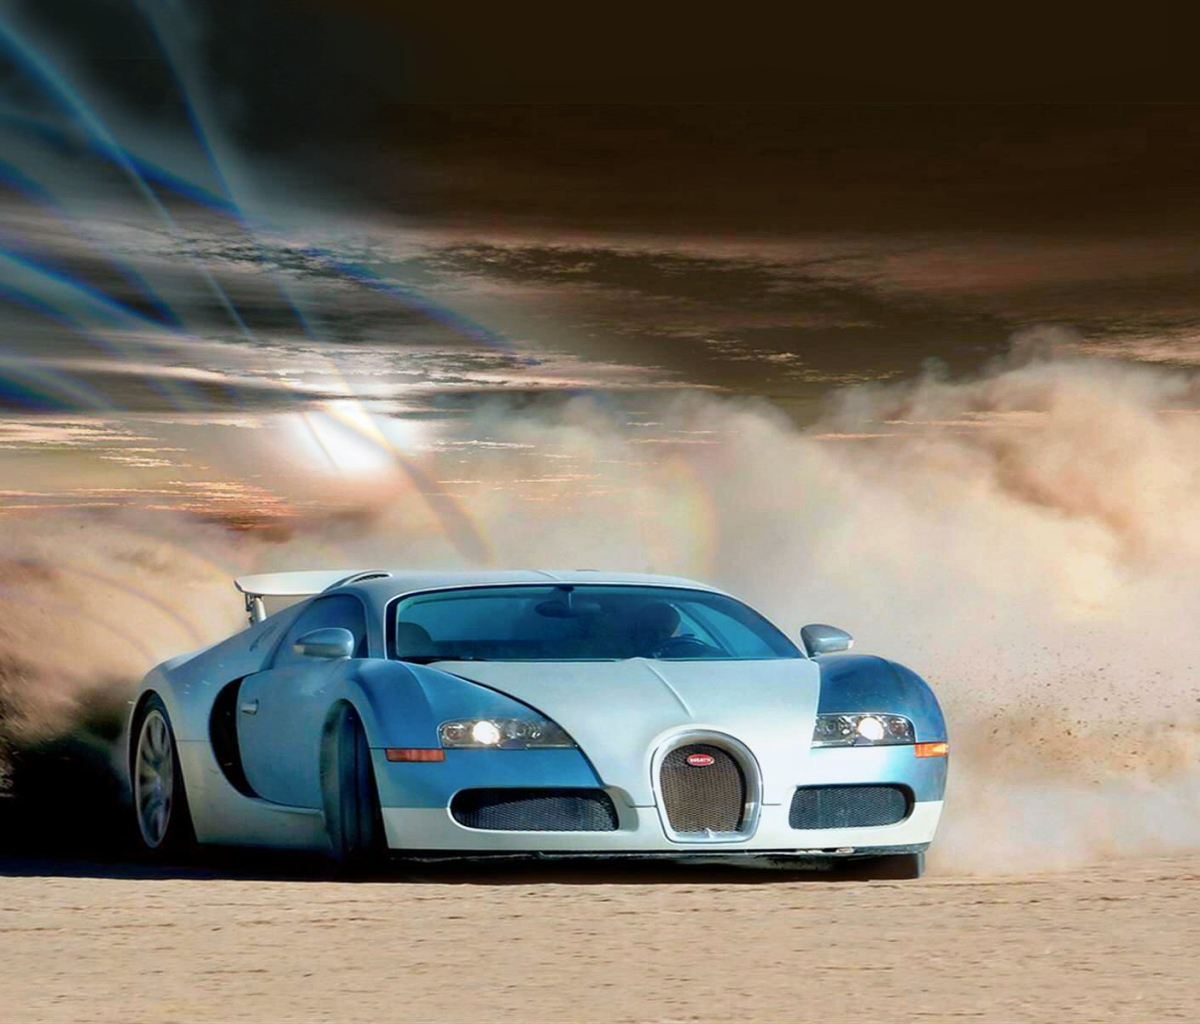 Descarga gratuita de fondo de pantalla para móvil de Bugatti, Coche, Bugatti Veyron, Vehículo, Vehículos.